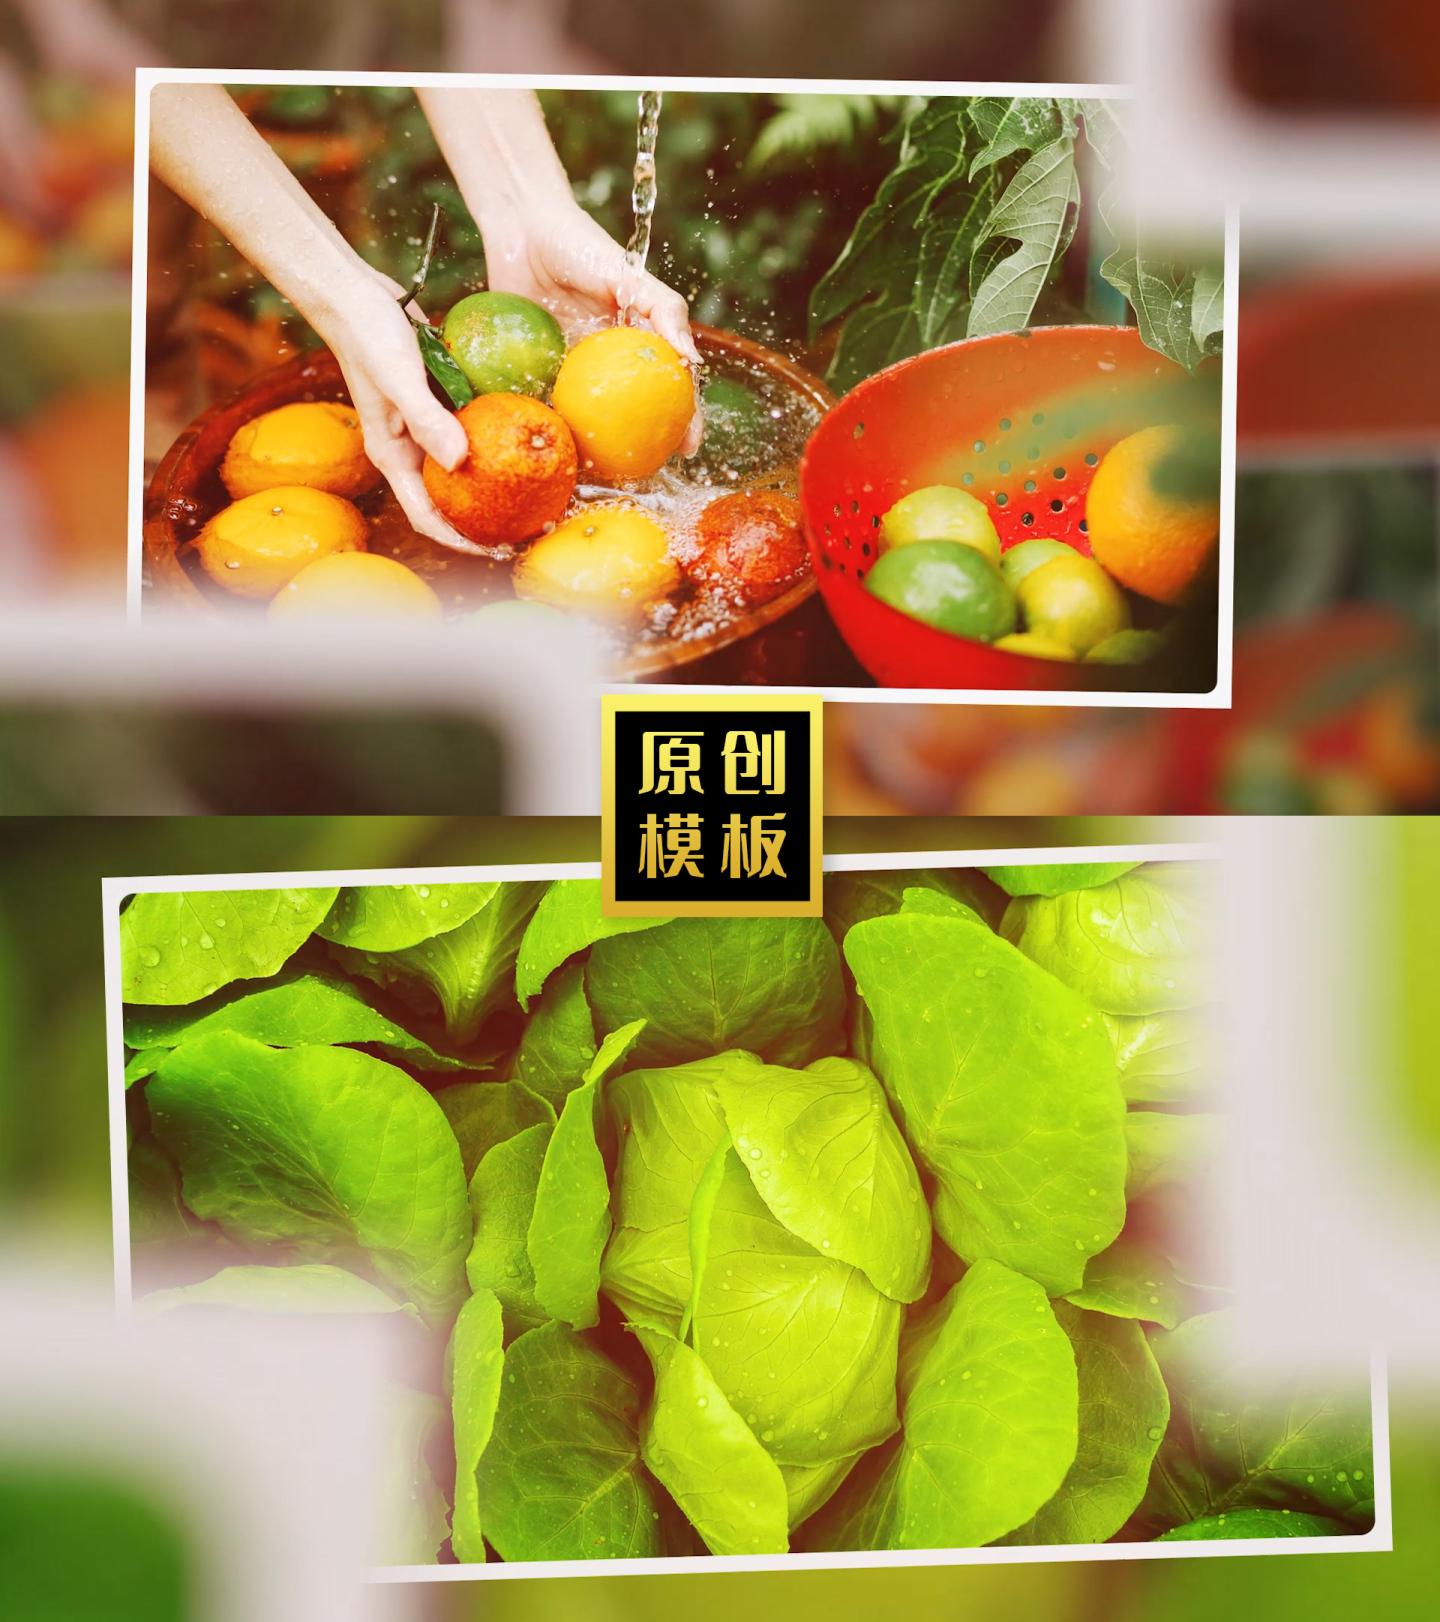 生态图片展示绿色农业产品照片包装